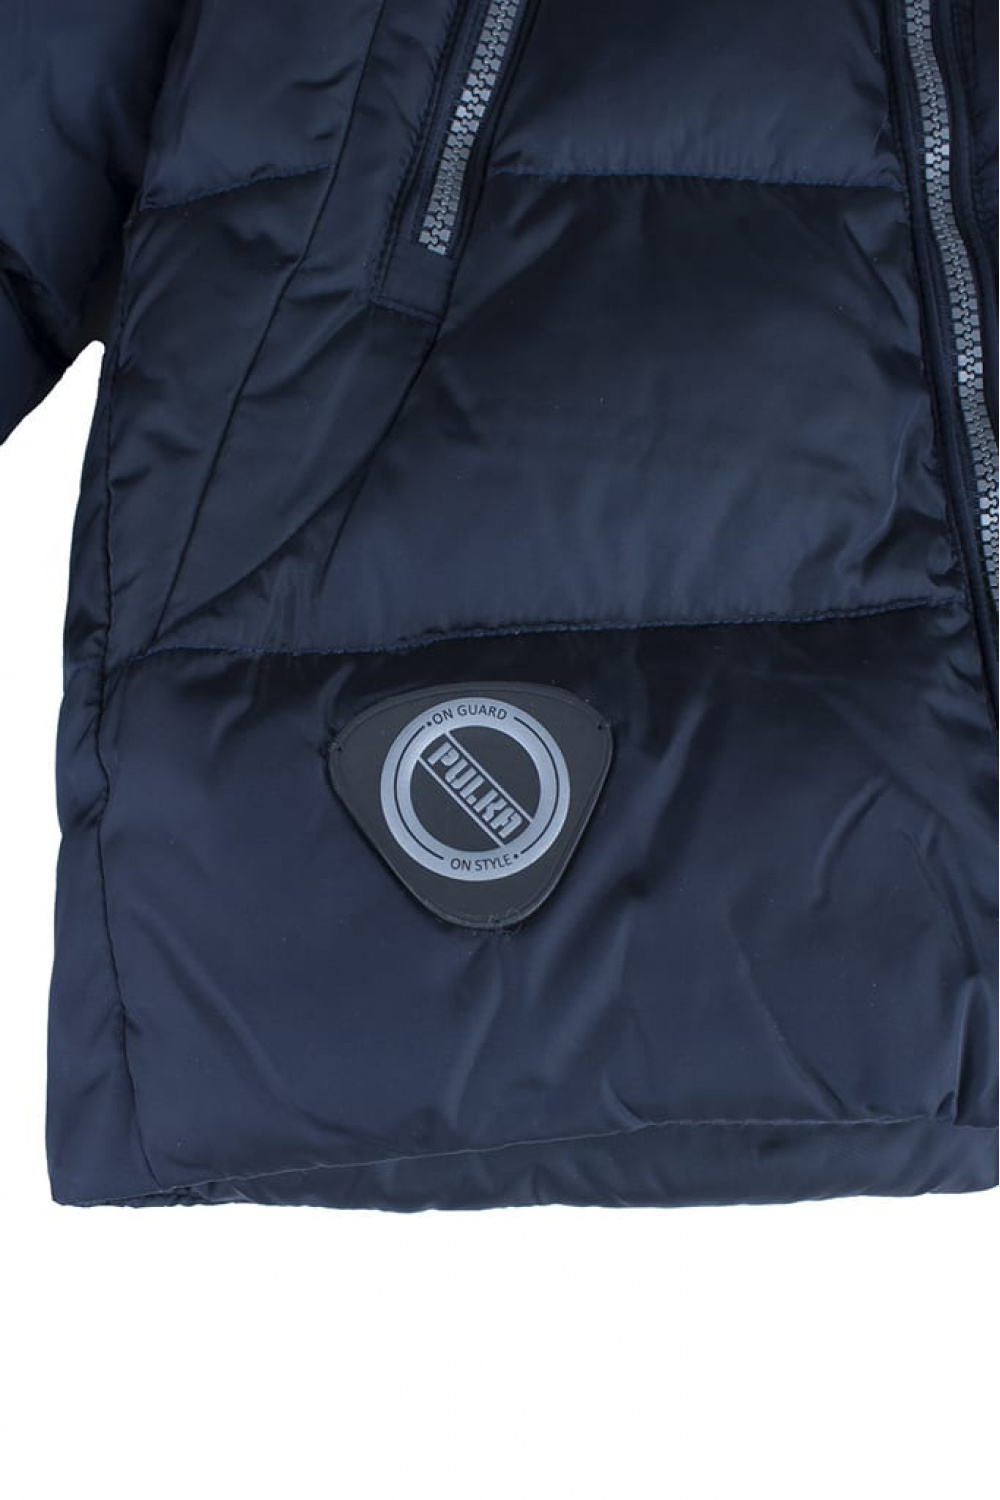 Зимняя куртка с капюшоном утепленным искусственным мехом (PUFWB-816-10145-305) Silver Spoon